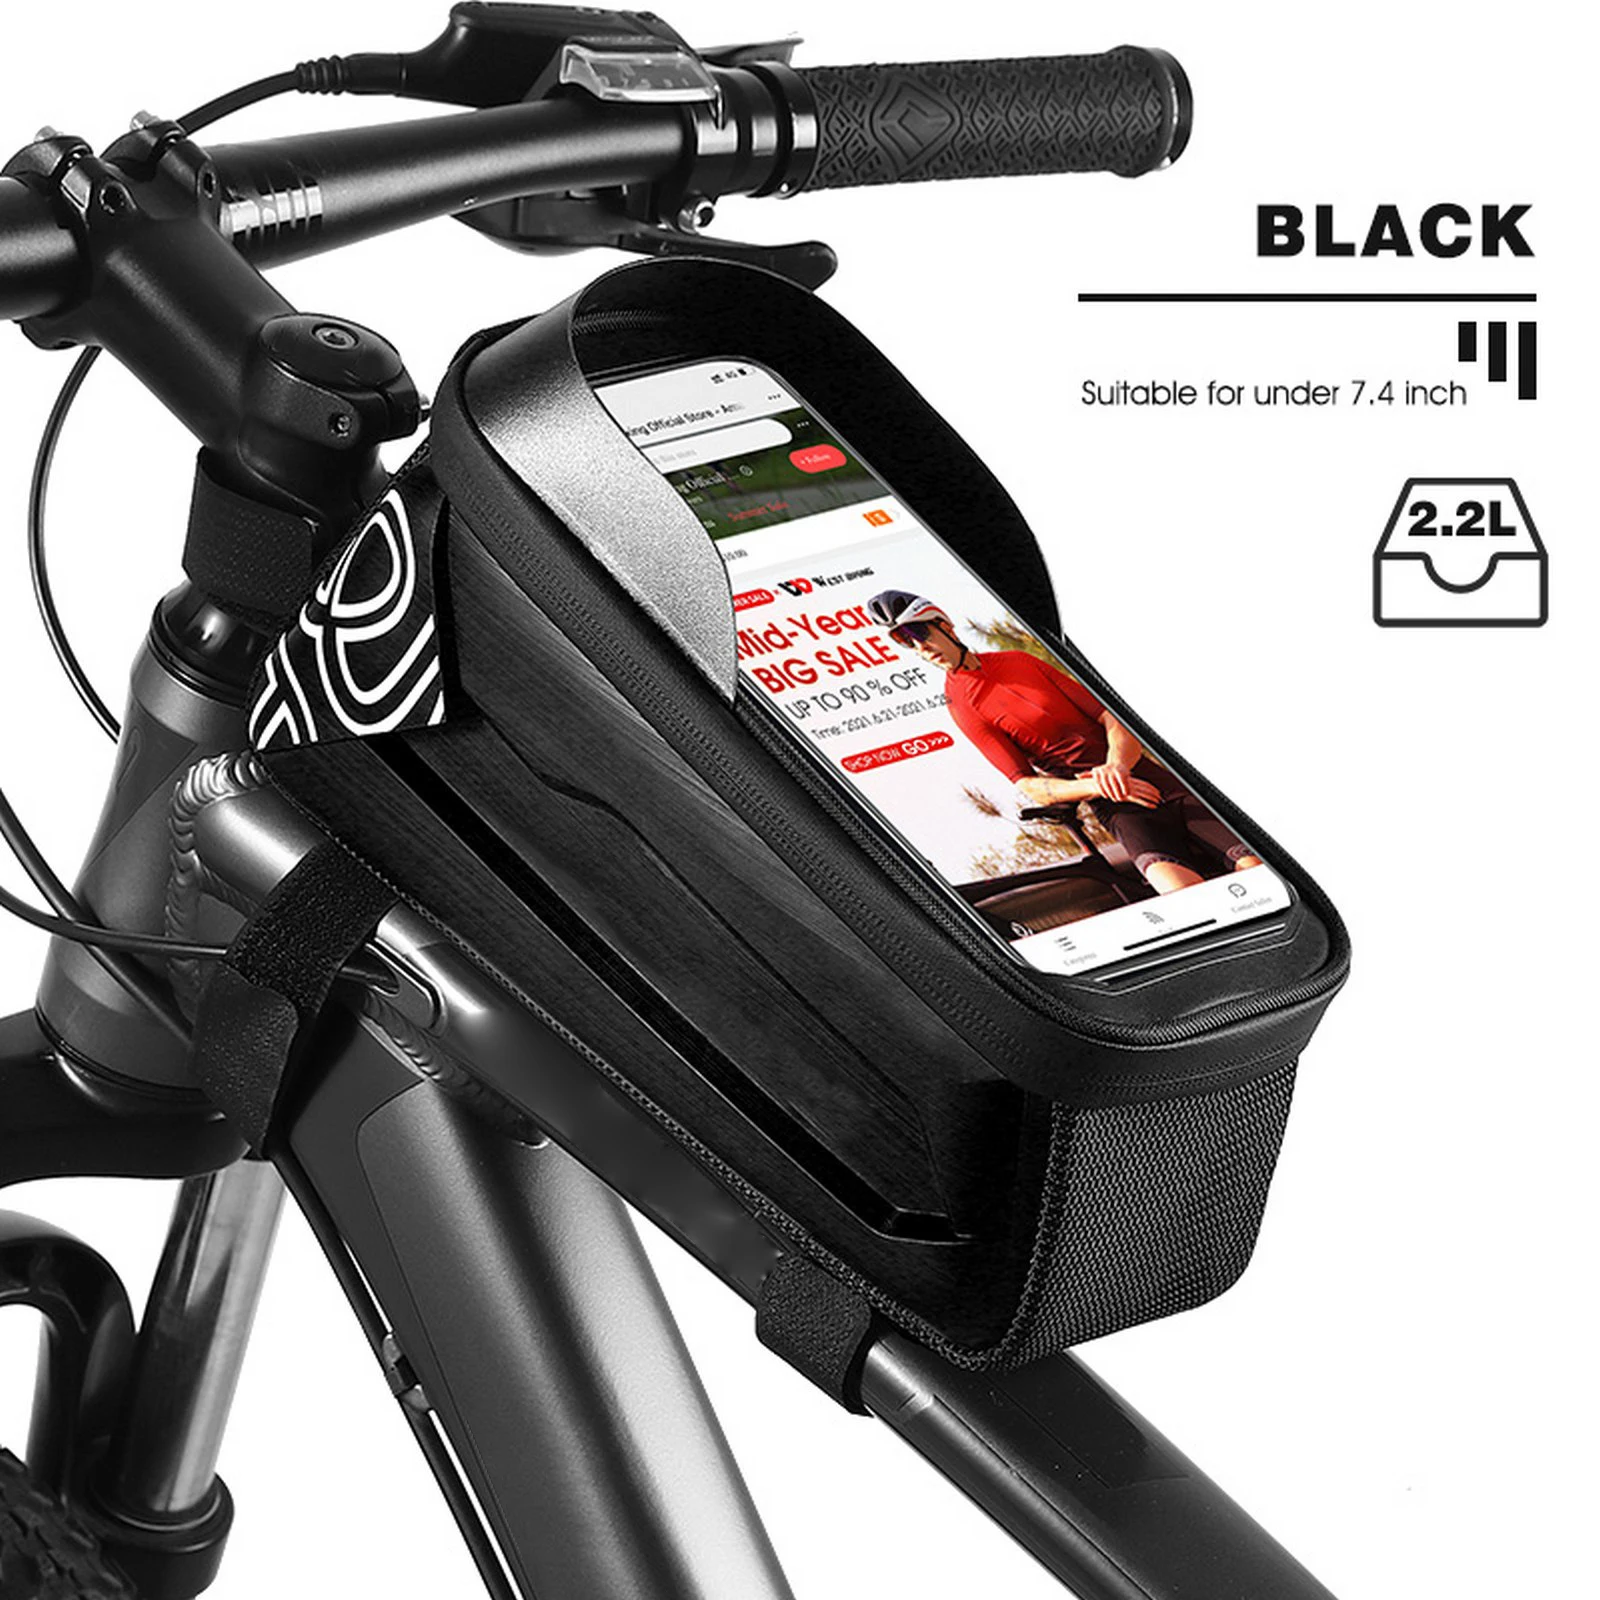 

Водонепроницаемая велосипедная сумка, рама, передняя верхняя труба, велосипедная сумка 7,4 дюйма, аксессуары для горных велосипедов